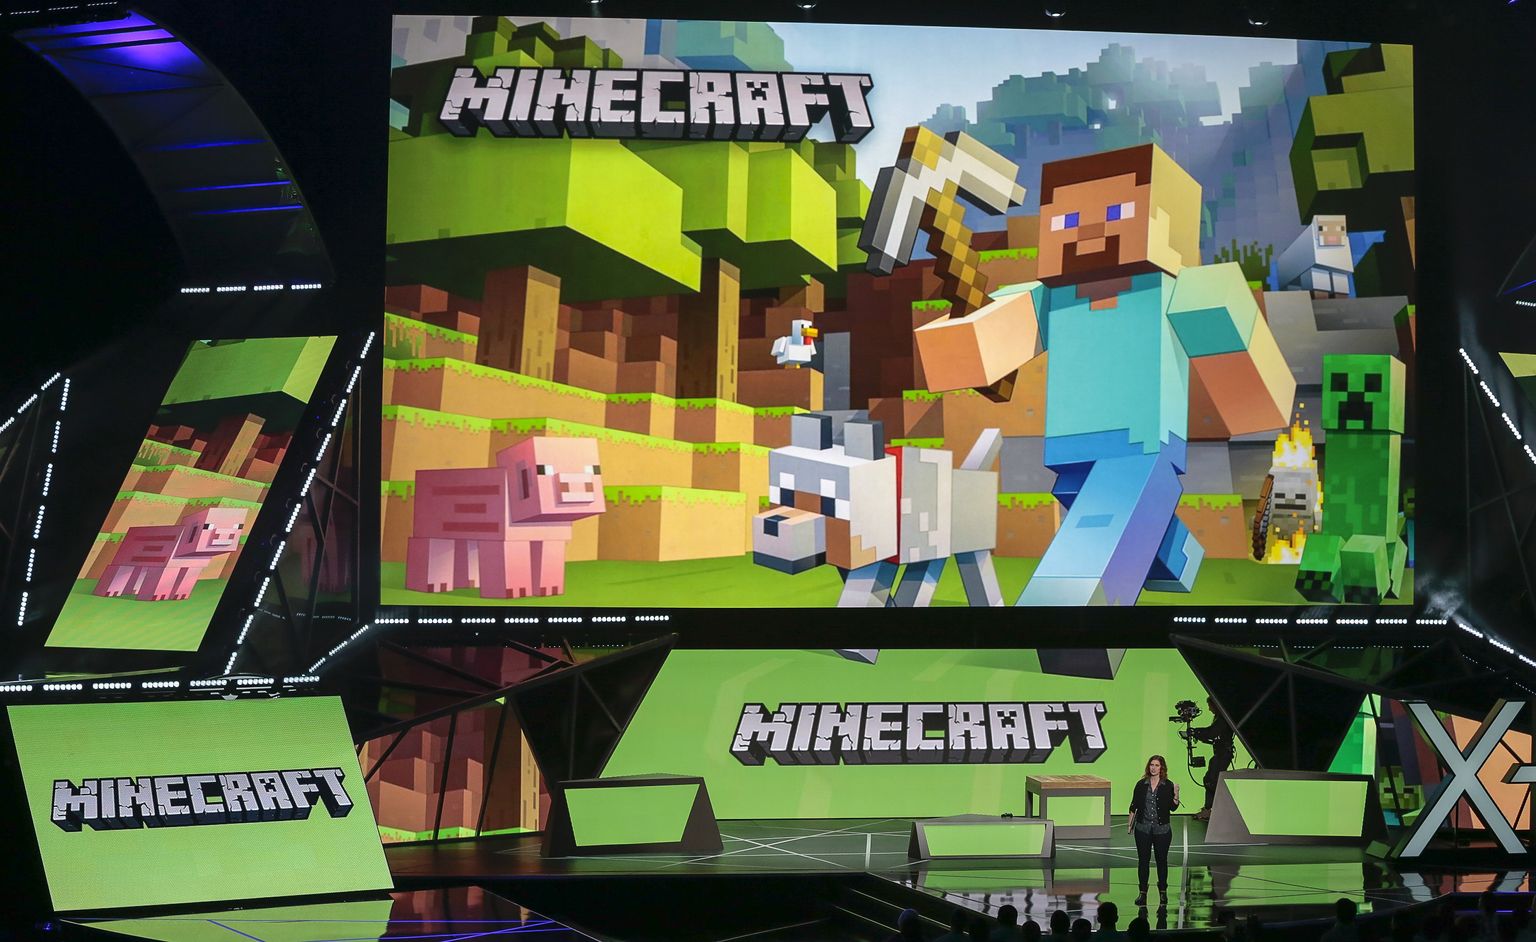 Arvutimängu Minecraft muudatusi tutvustav sündmus juunis 2015 USA-s Los Angeleses